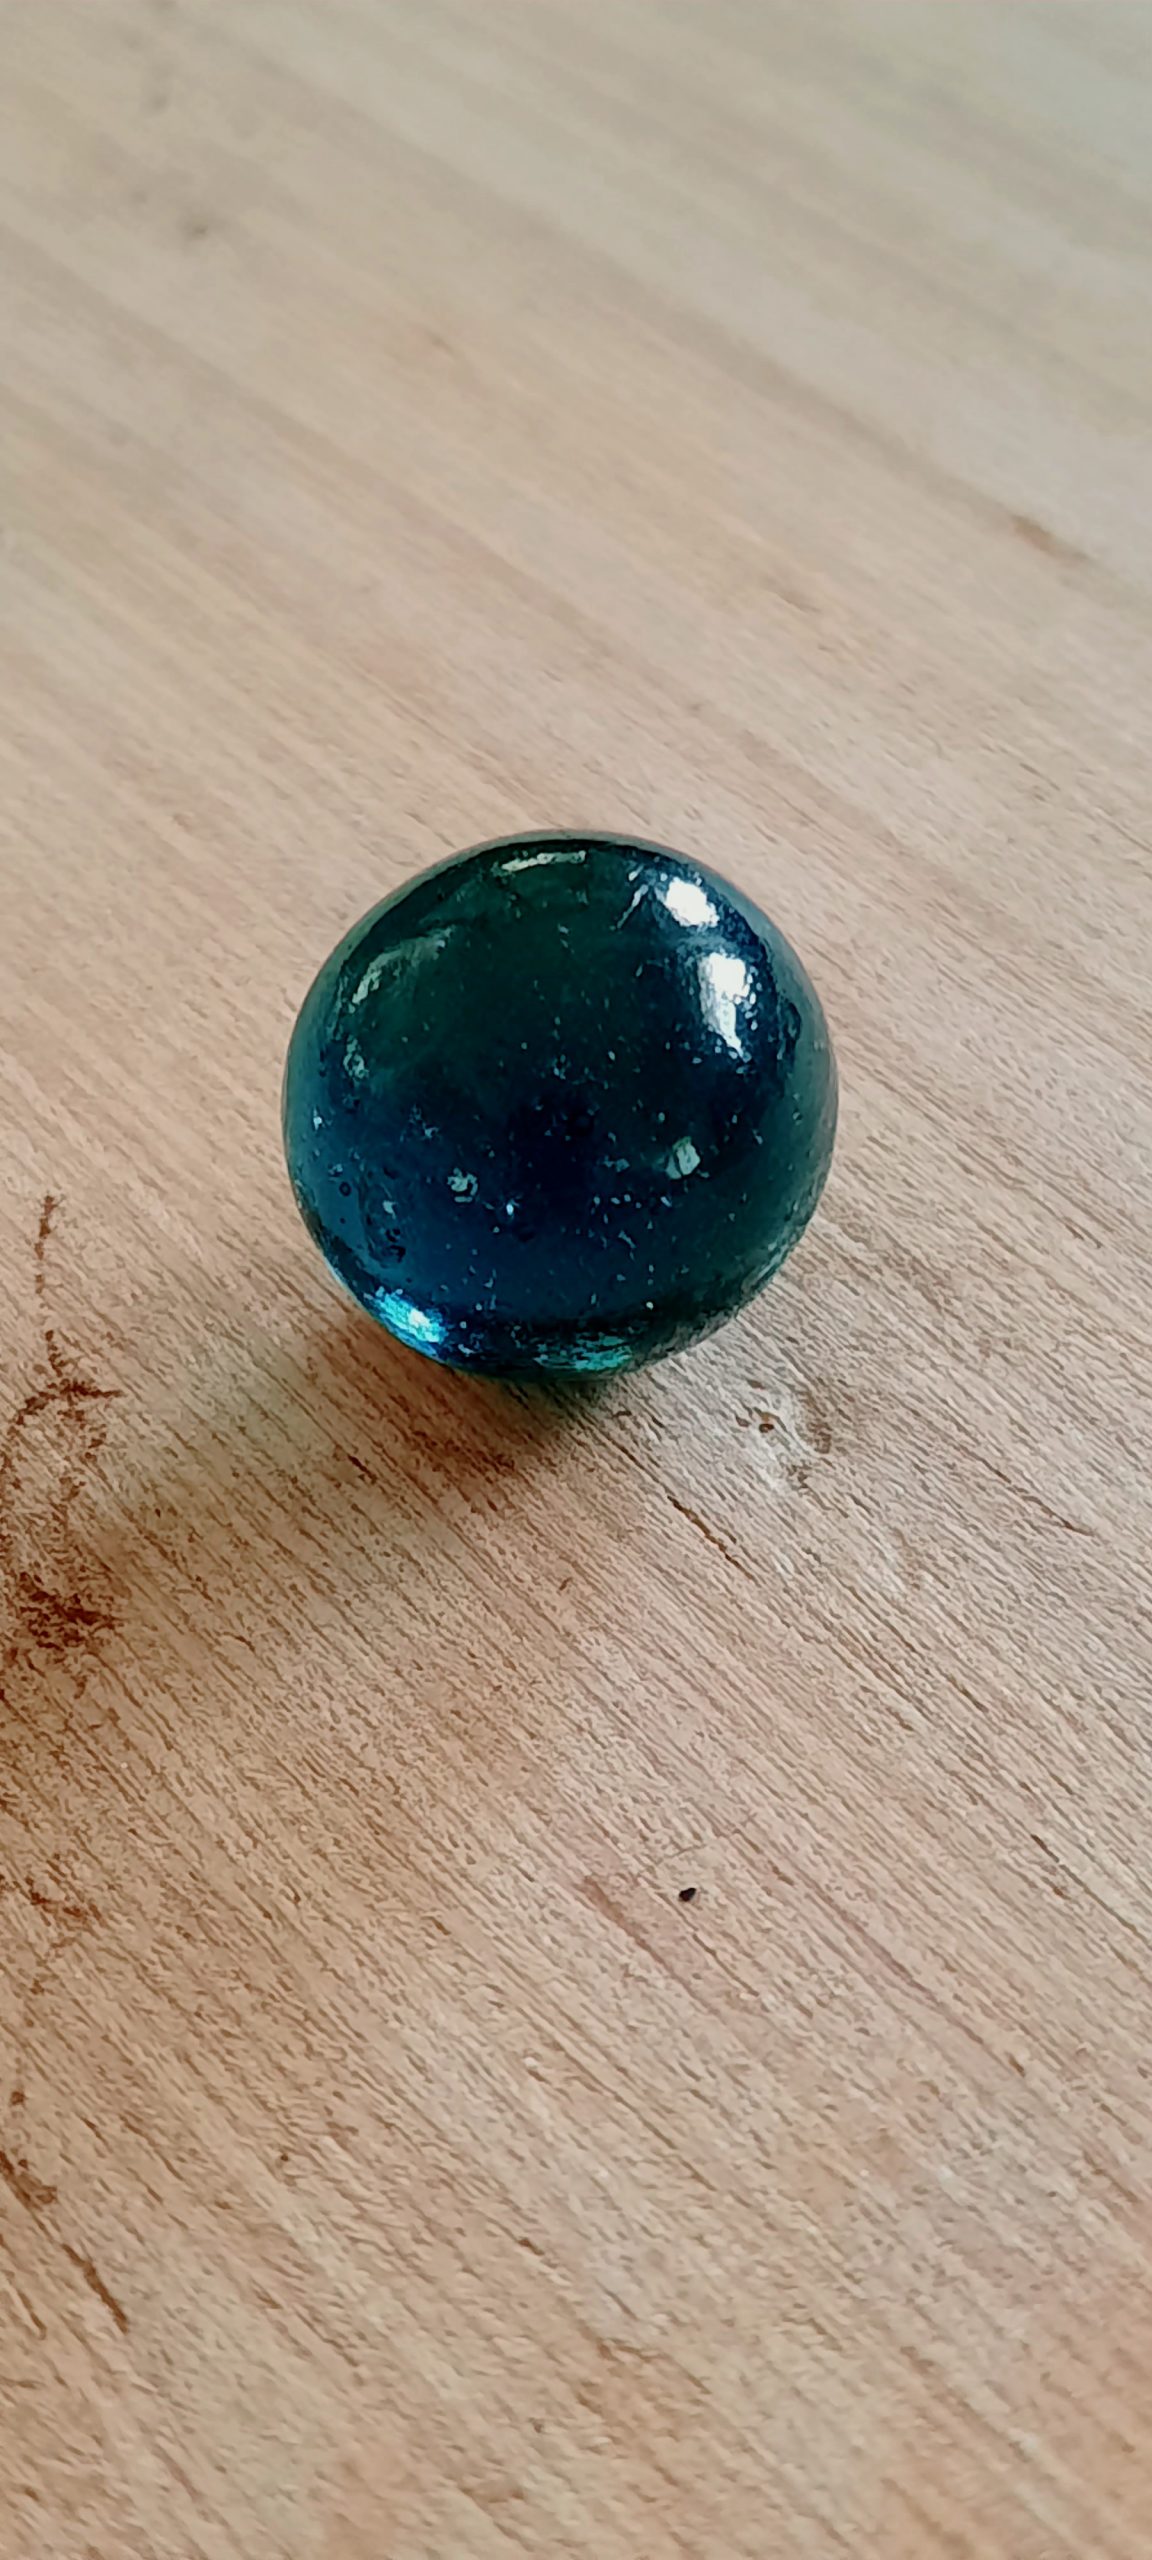 A glass ball